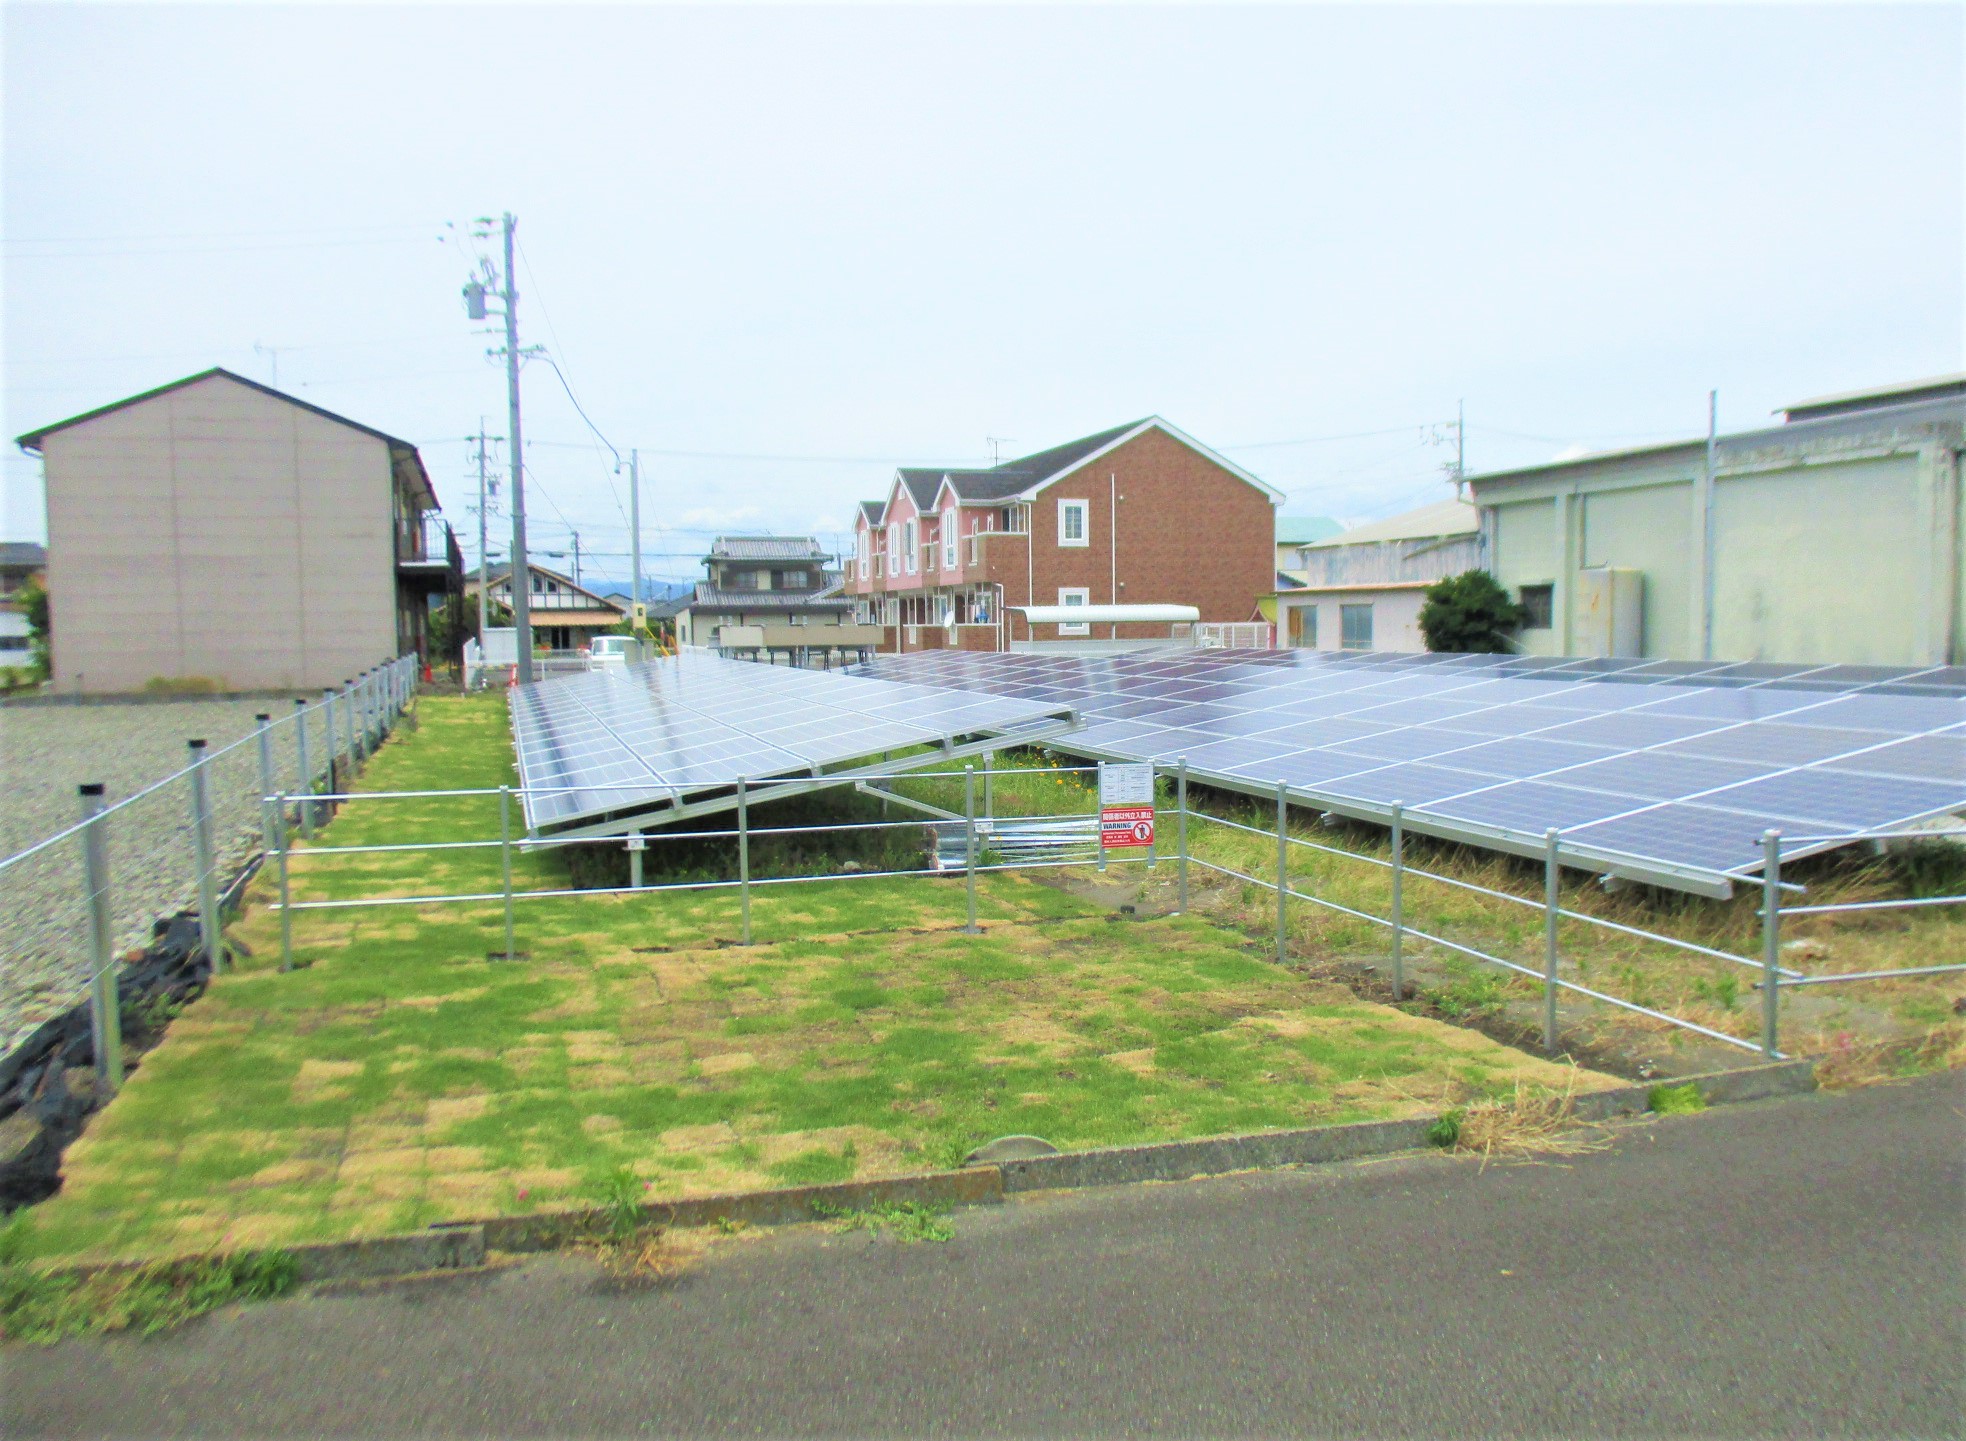 太陽光発電設備工事